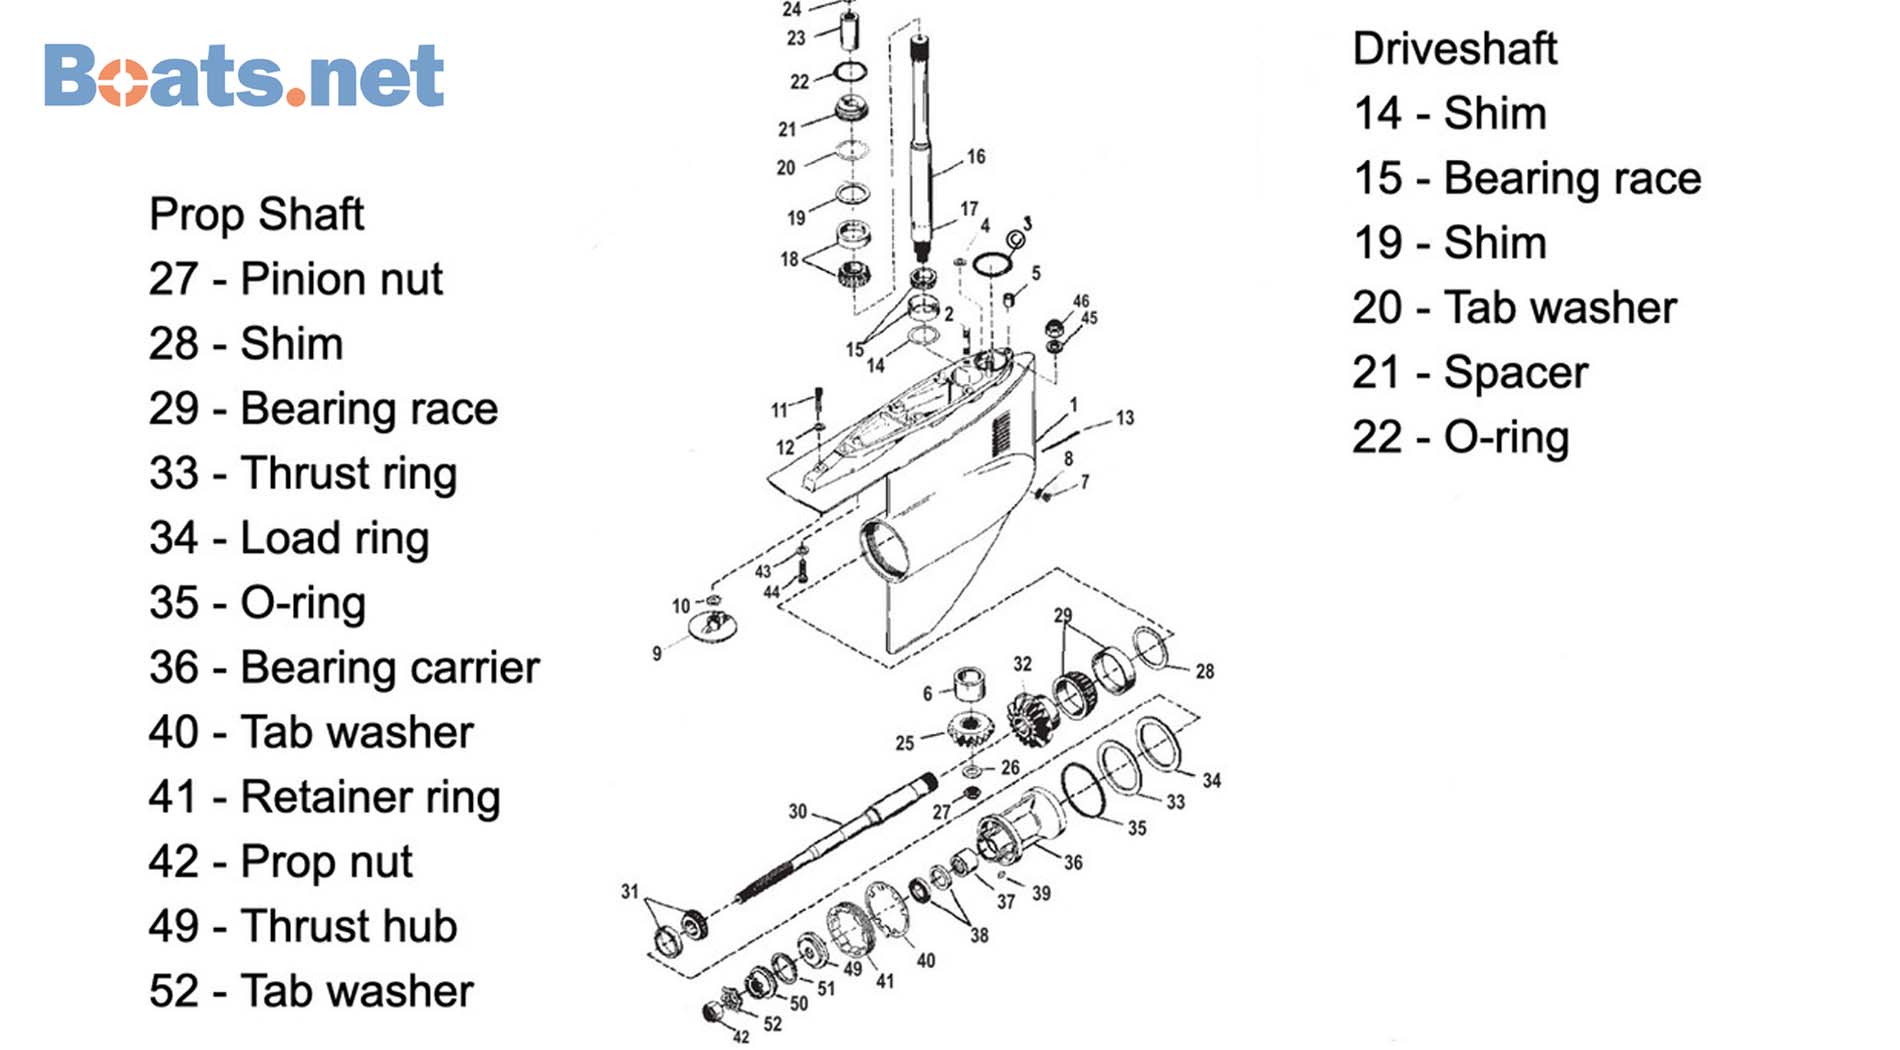 Mercruiser Bravo 2 lower unit parts diagram